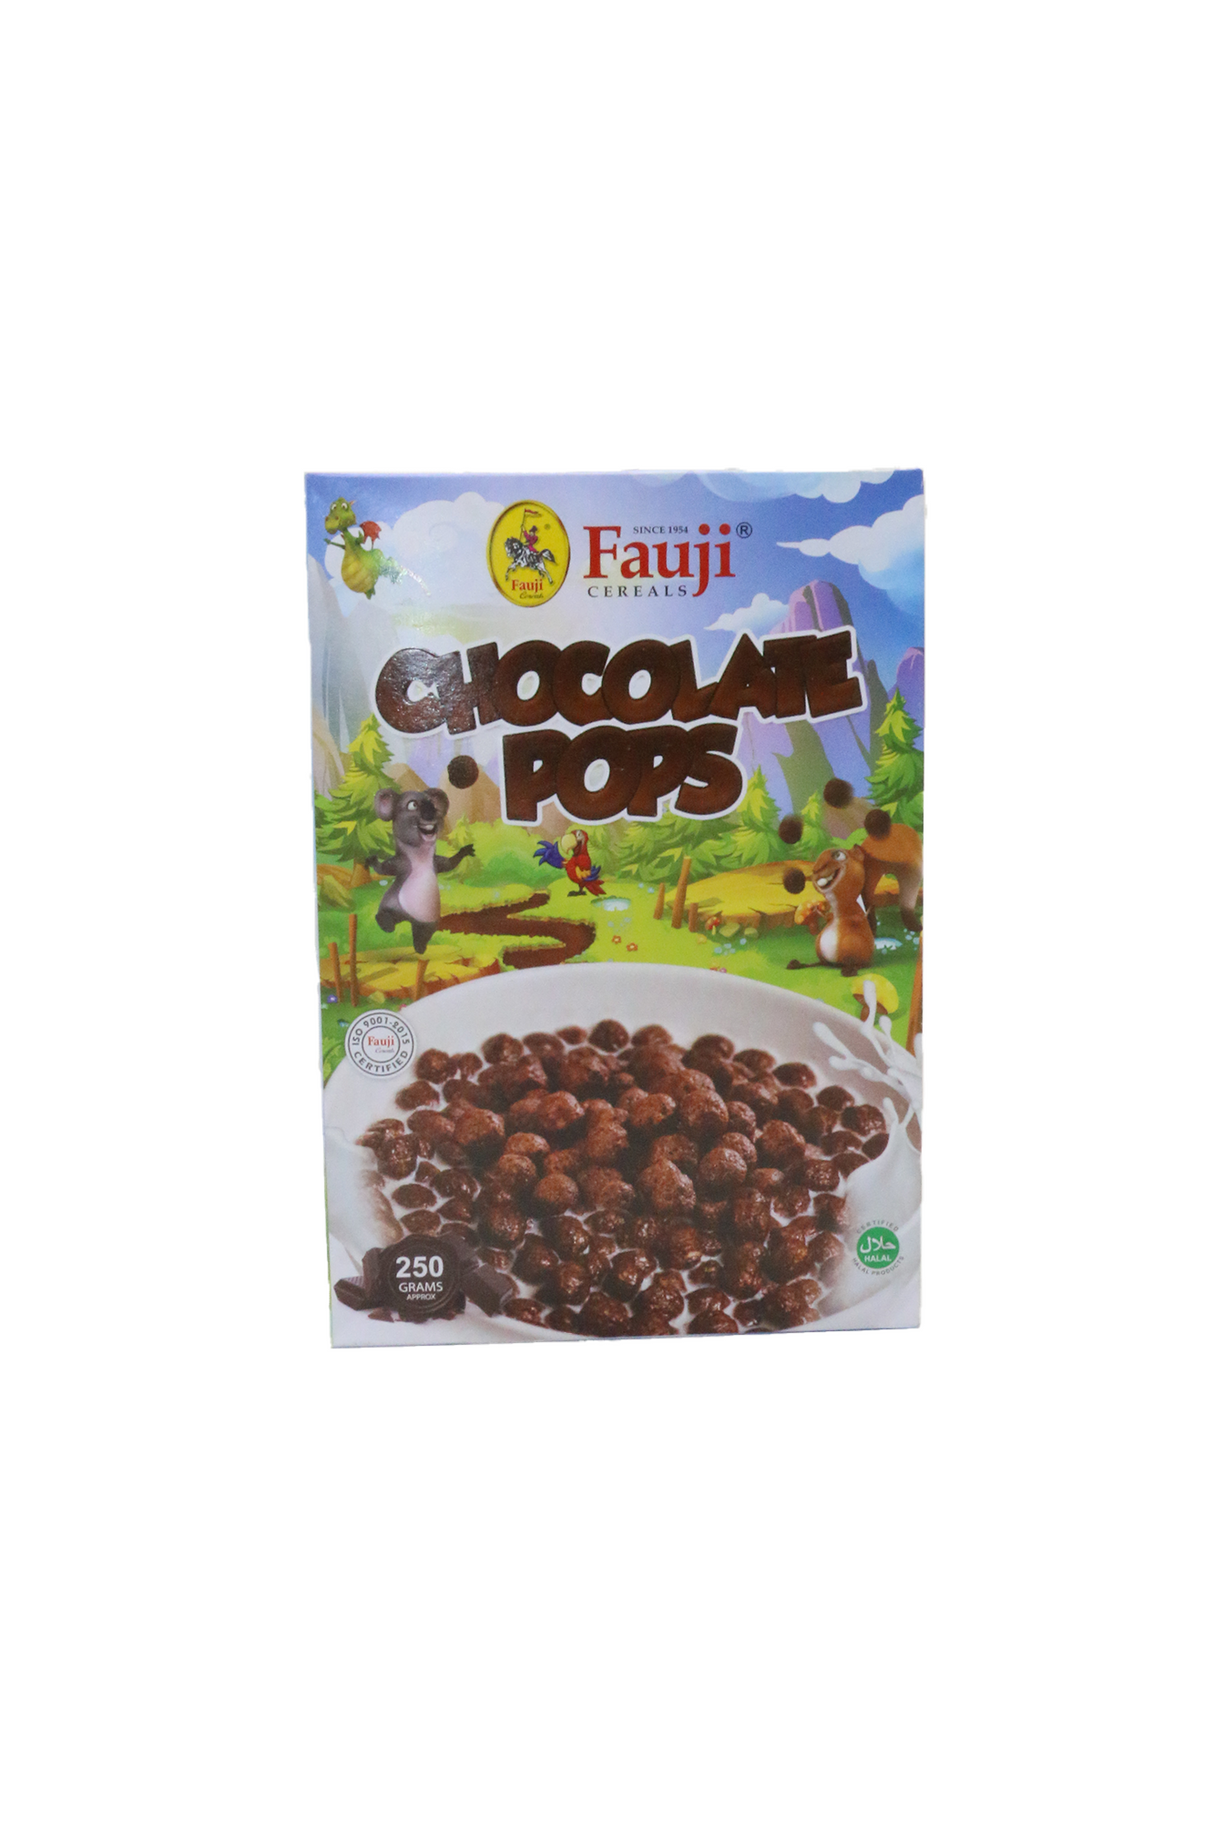 fauji chocolate pops 250g